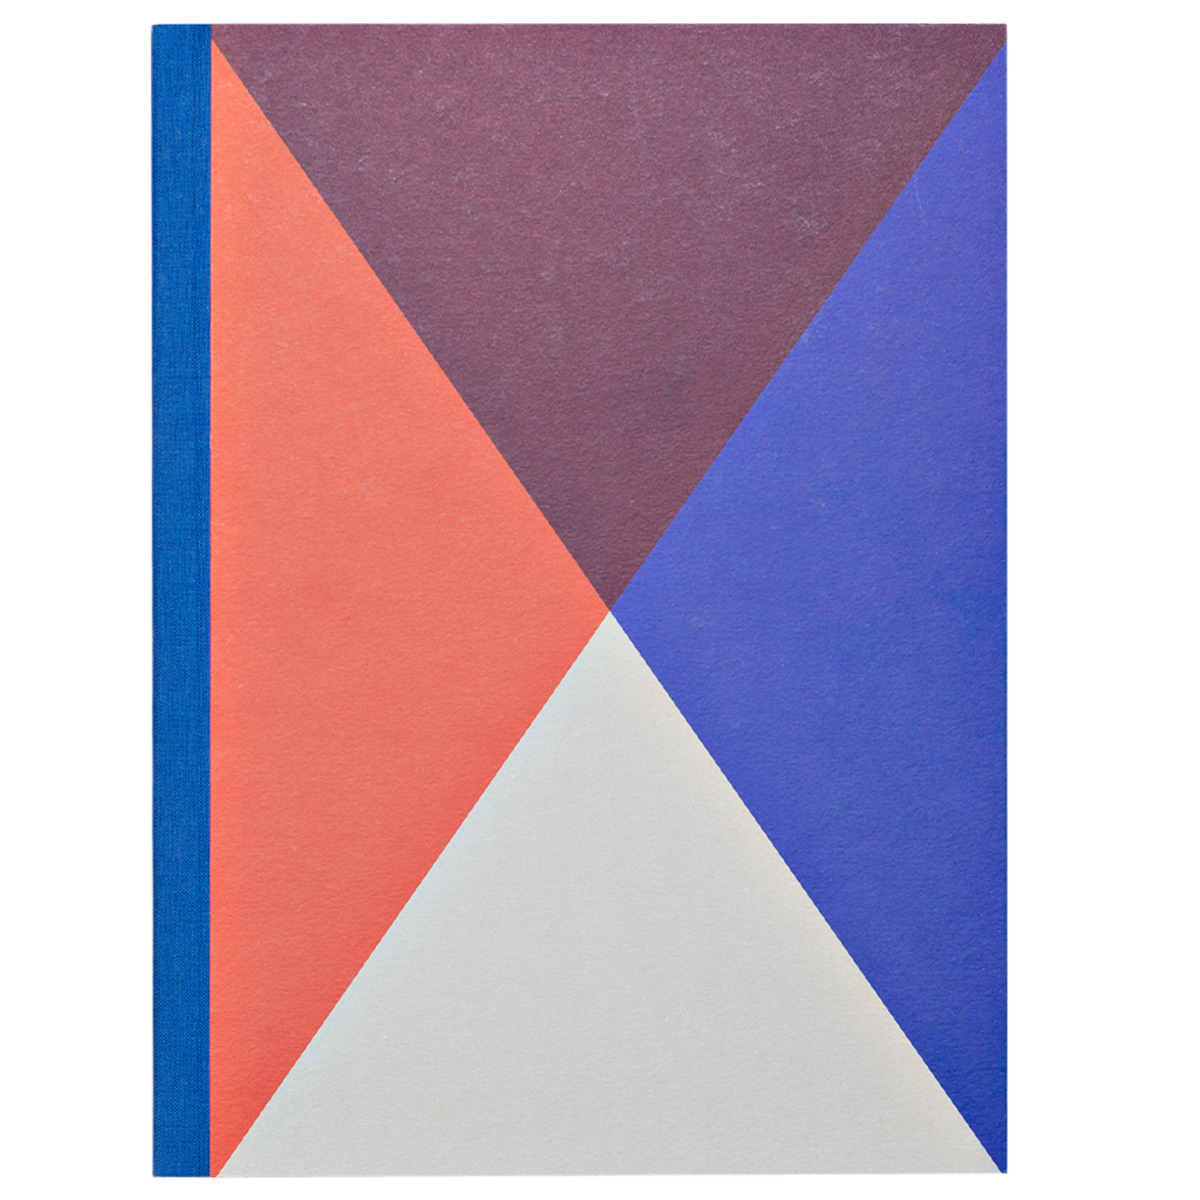 Taccuino design, Triangles by Rubbettino